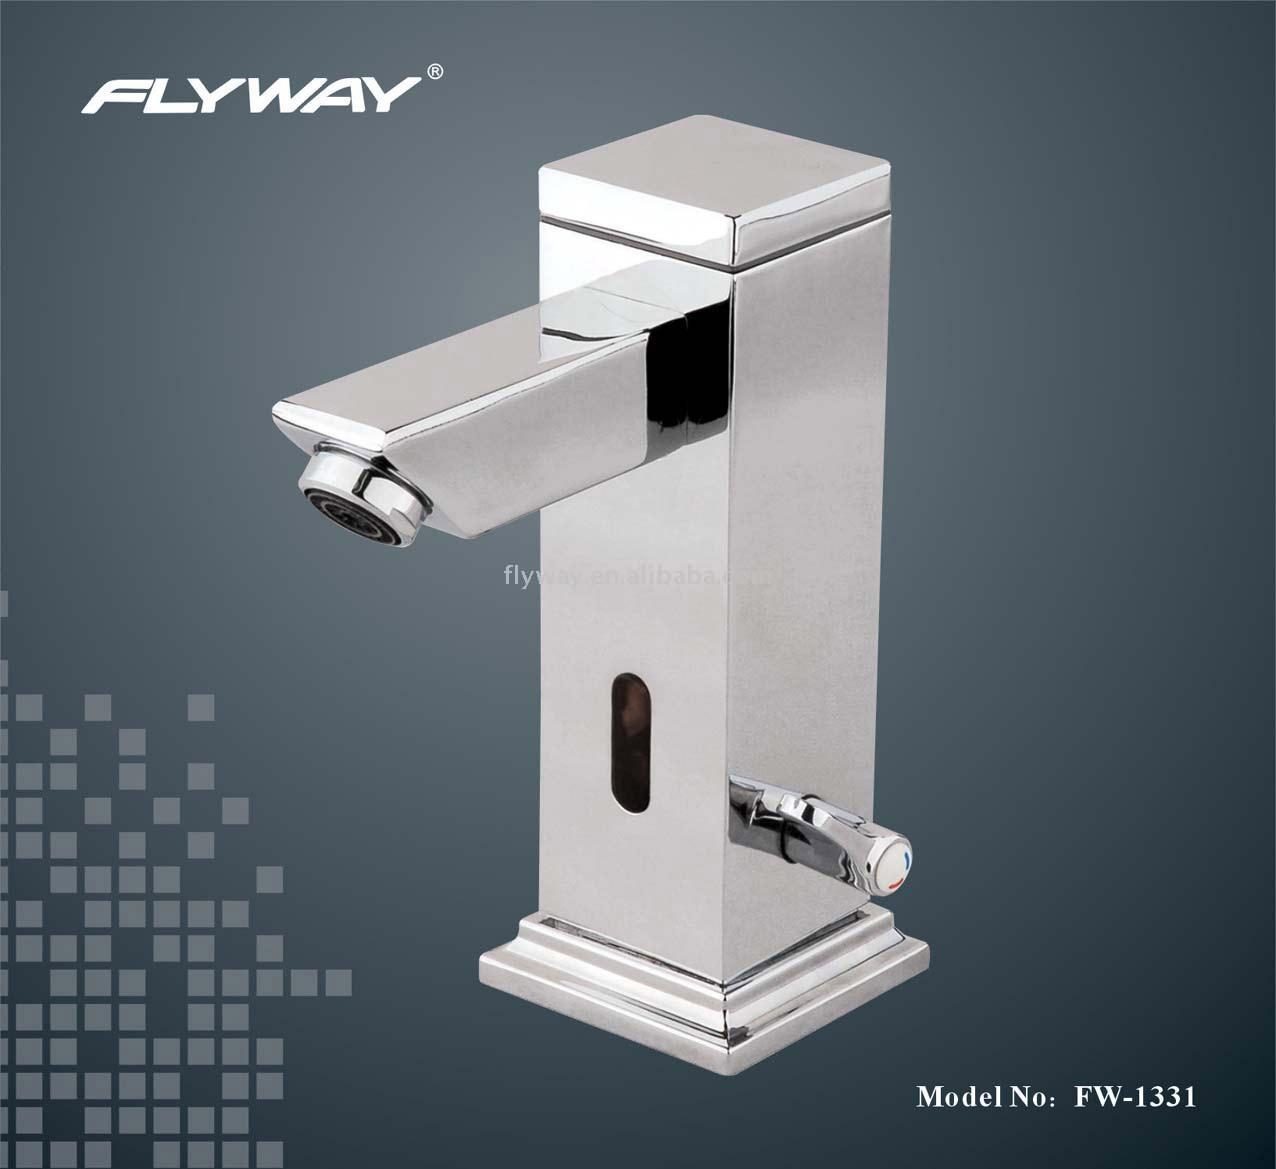  Integrated Automatic Sensing Faucet (Intégrée de détection automatique du robinet)